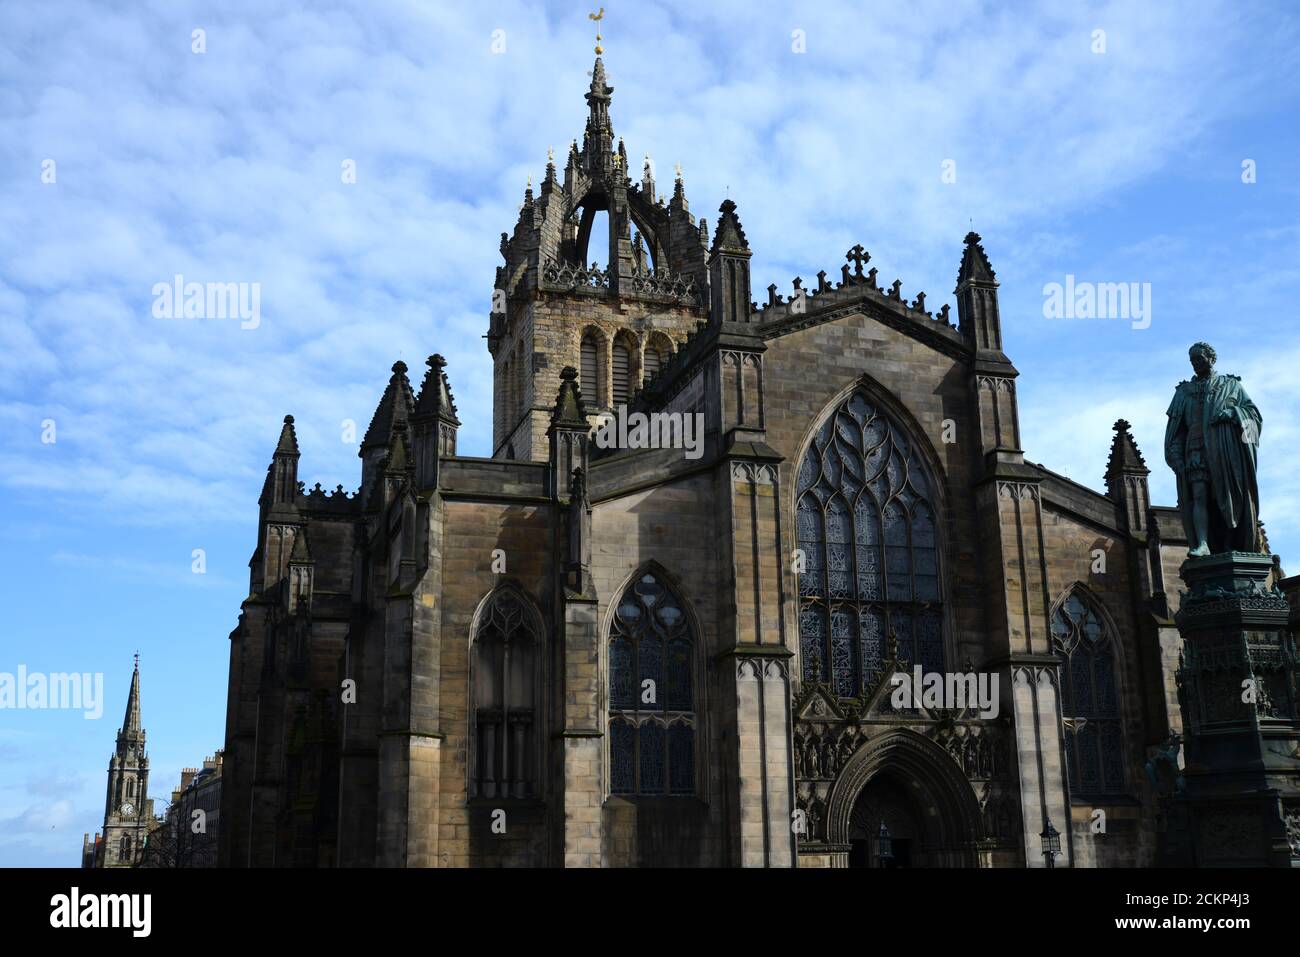 Iglesia histórica de St Giles en la Royal Mile Edinburgh en el soleado día con el cielo azul profundo y las nubes blancas wispy mostrando estatuas y vidrieras Foto de stock